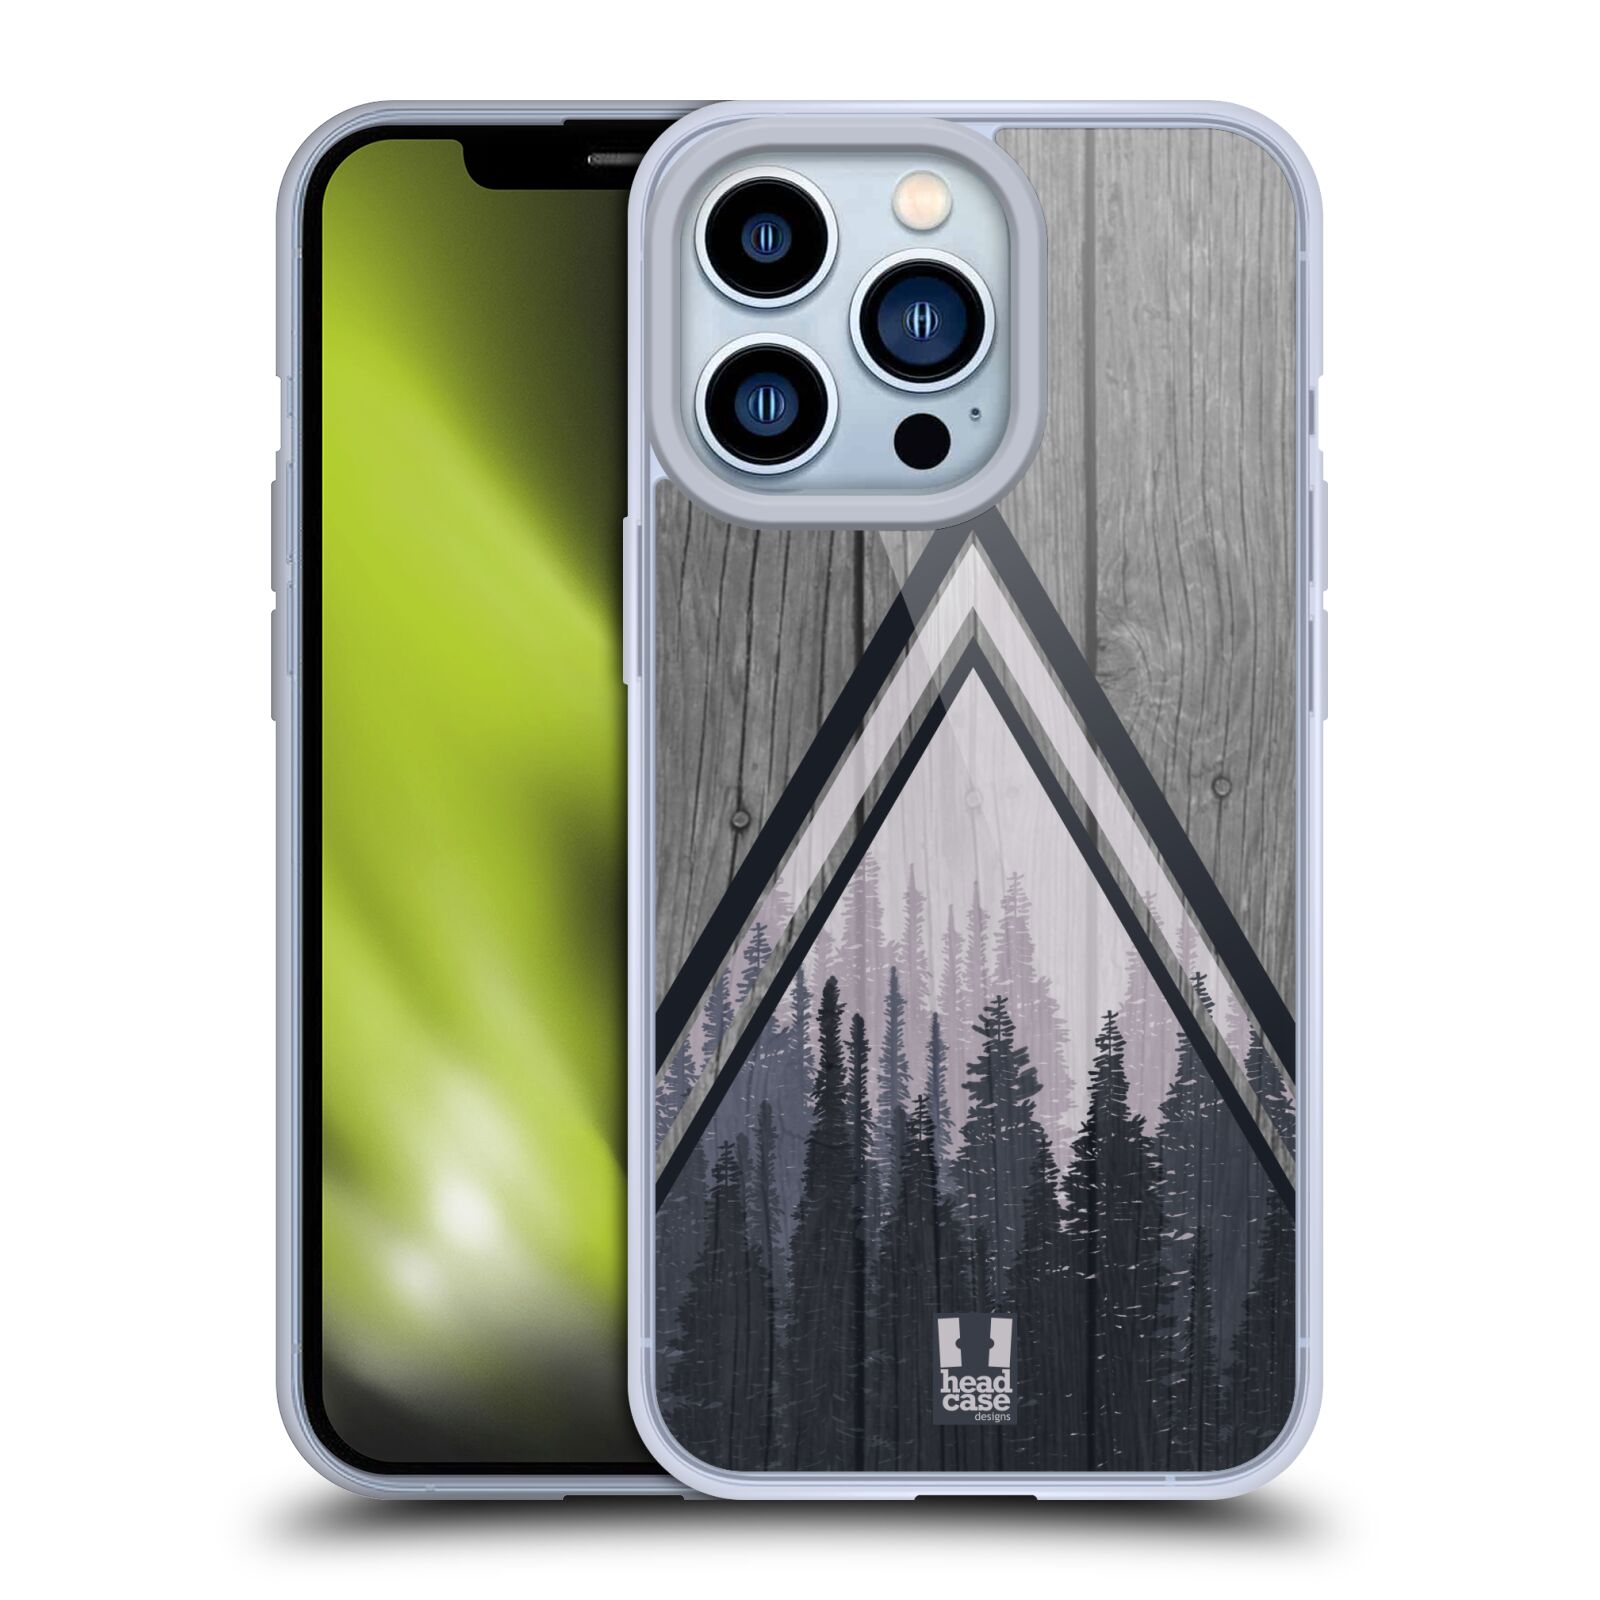 Silikonové pouzdro na mobil Apple iPhone 13 Pro - Head Case - Dřevo a temný les (Silikonový kryt, obal, pouzdro na mobilní telefon Apple iPhone 13 Pro s motivem Dřevo a temný les)